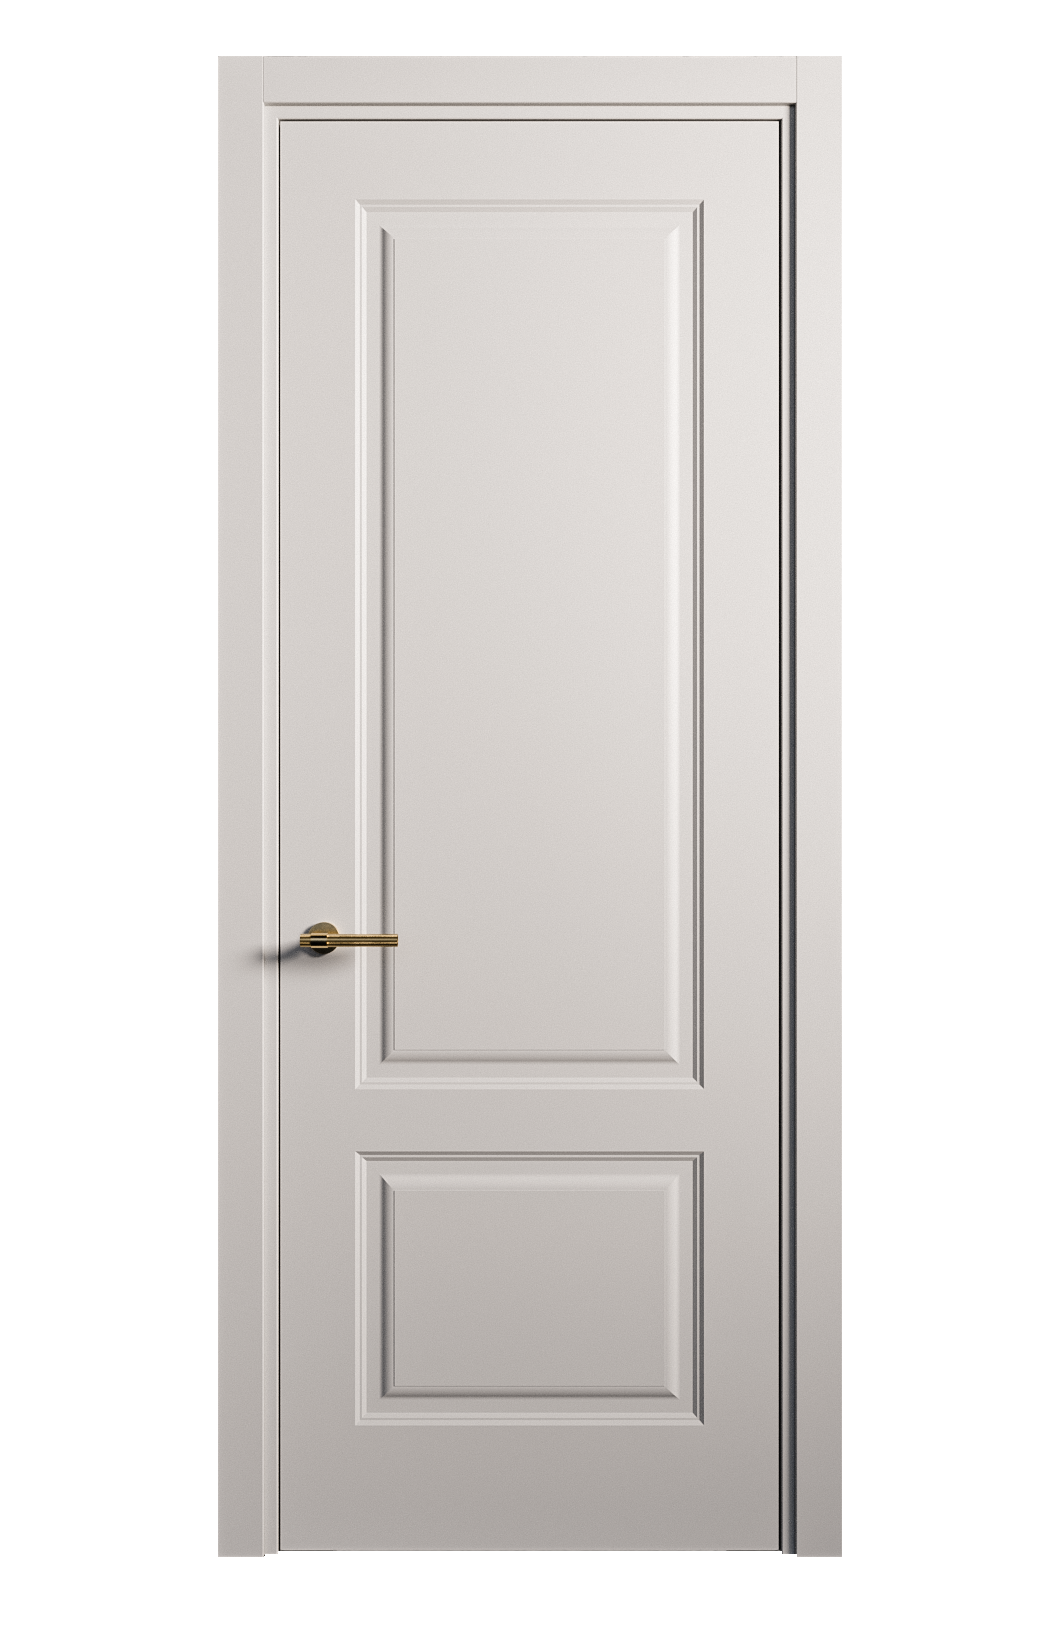 Межкомнатная дверь Вита-1 глухая эмаль ral 7047 26251